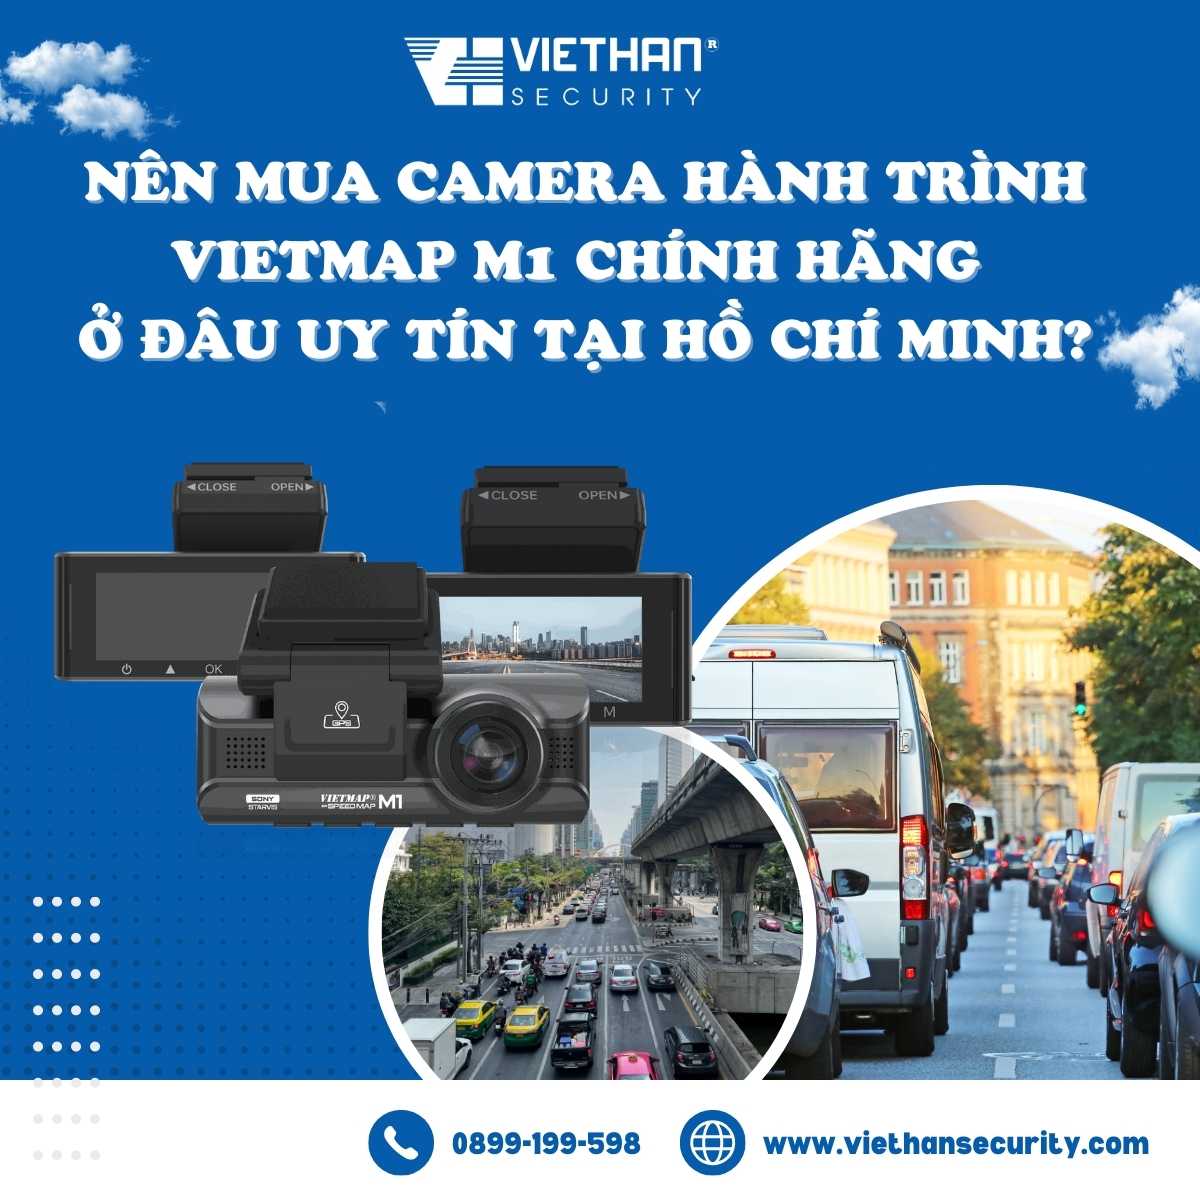 Nên mua Camera hành trình Vietmap M1 chính hãng ở đâu uy tín tại Hồ Chí Minh?